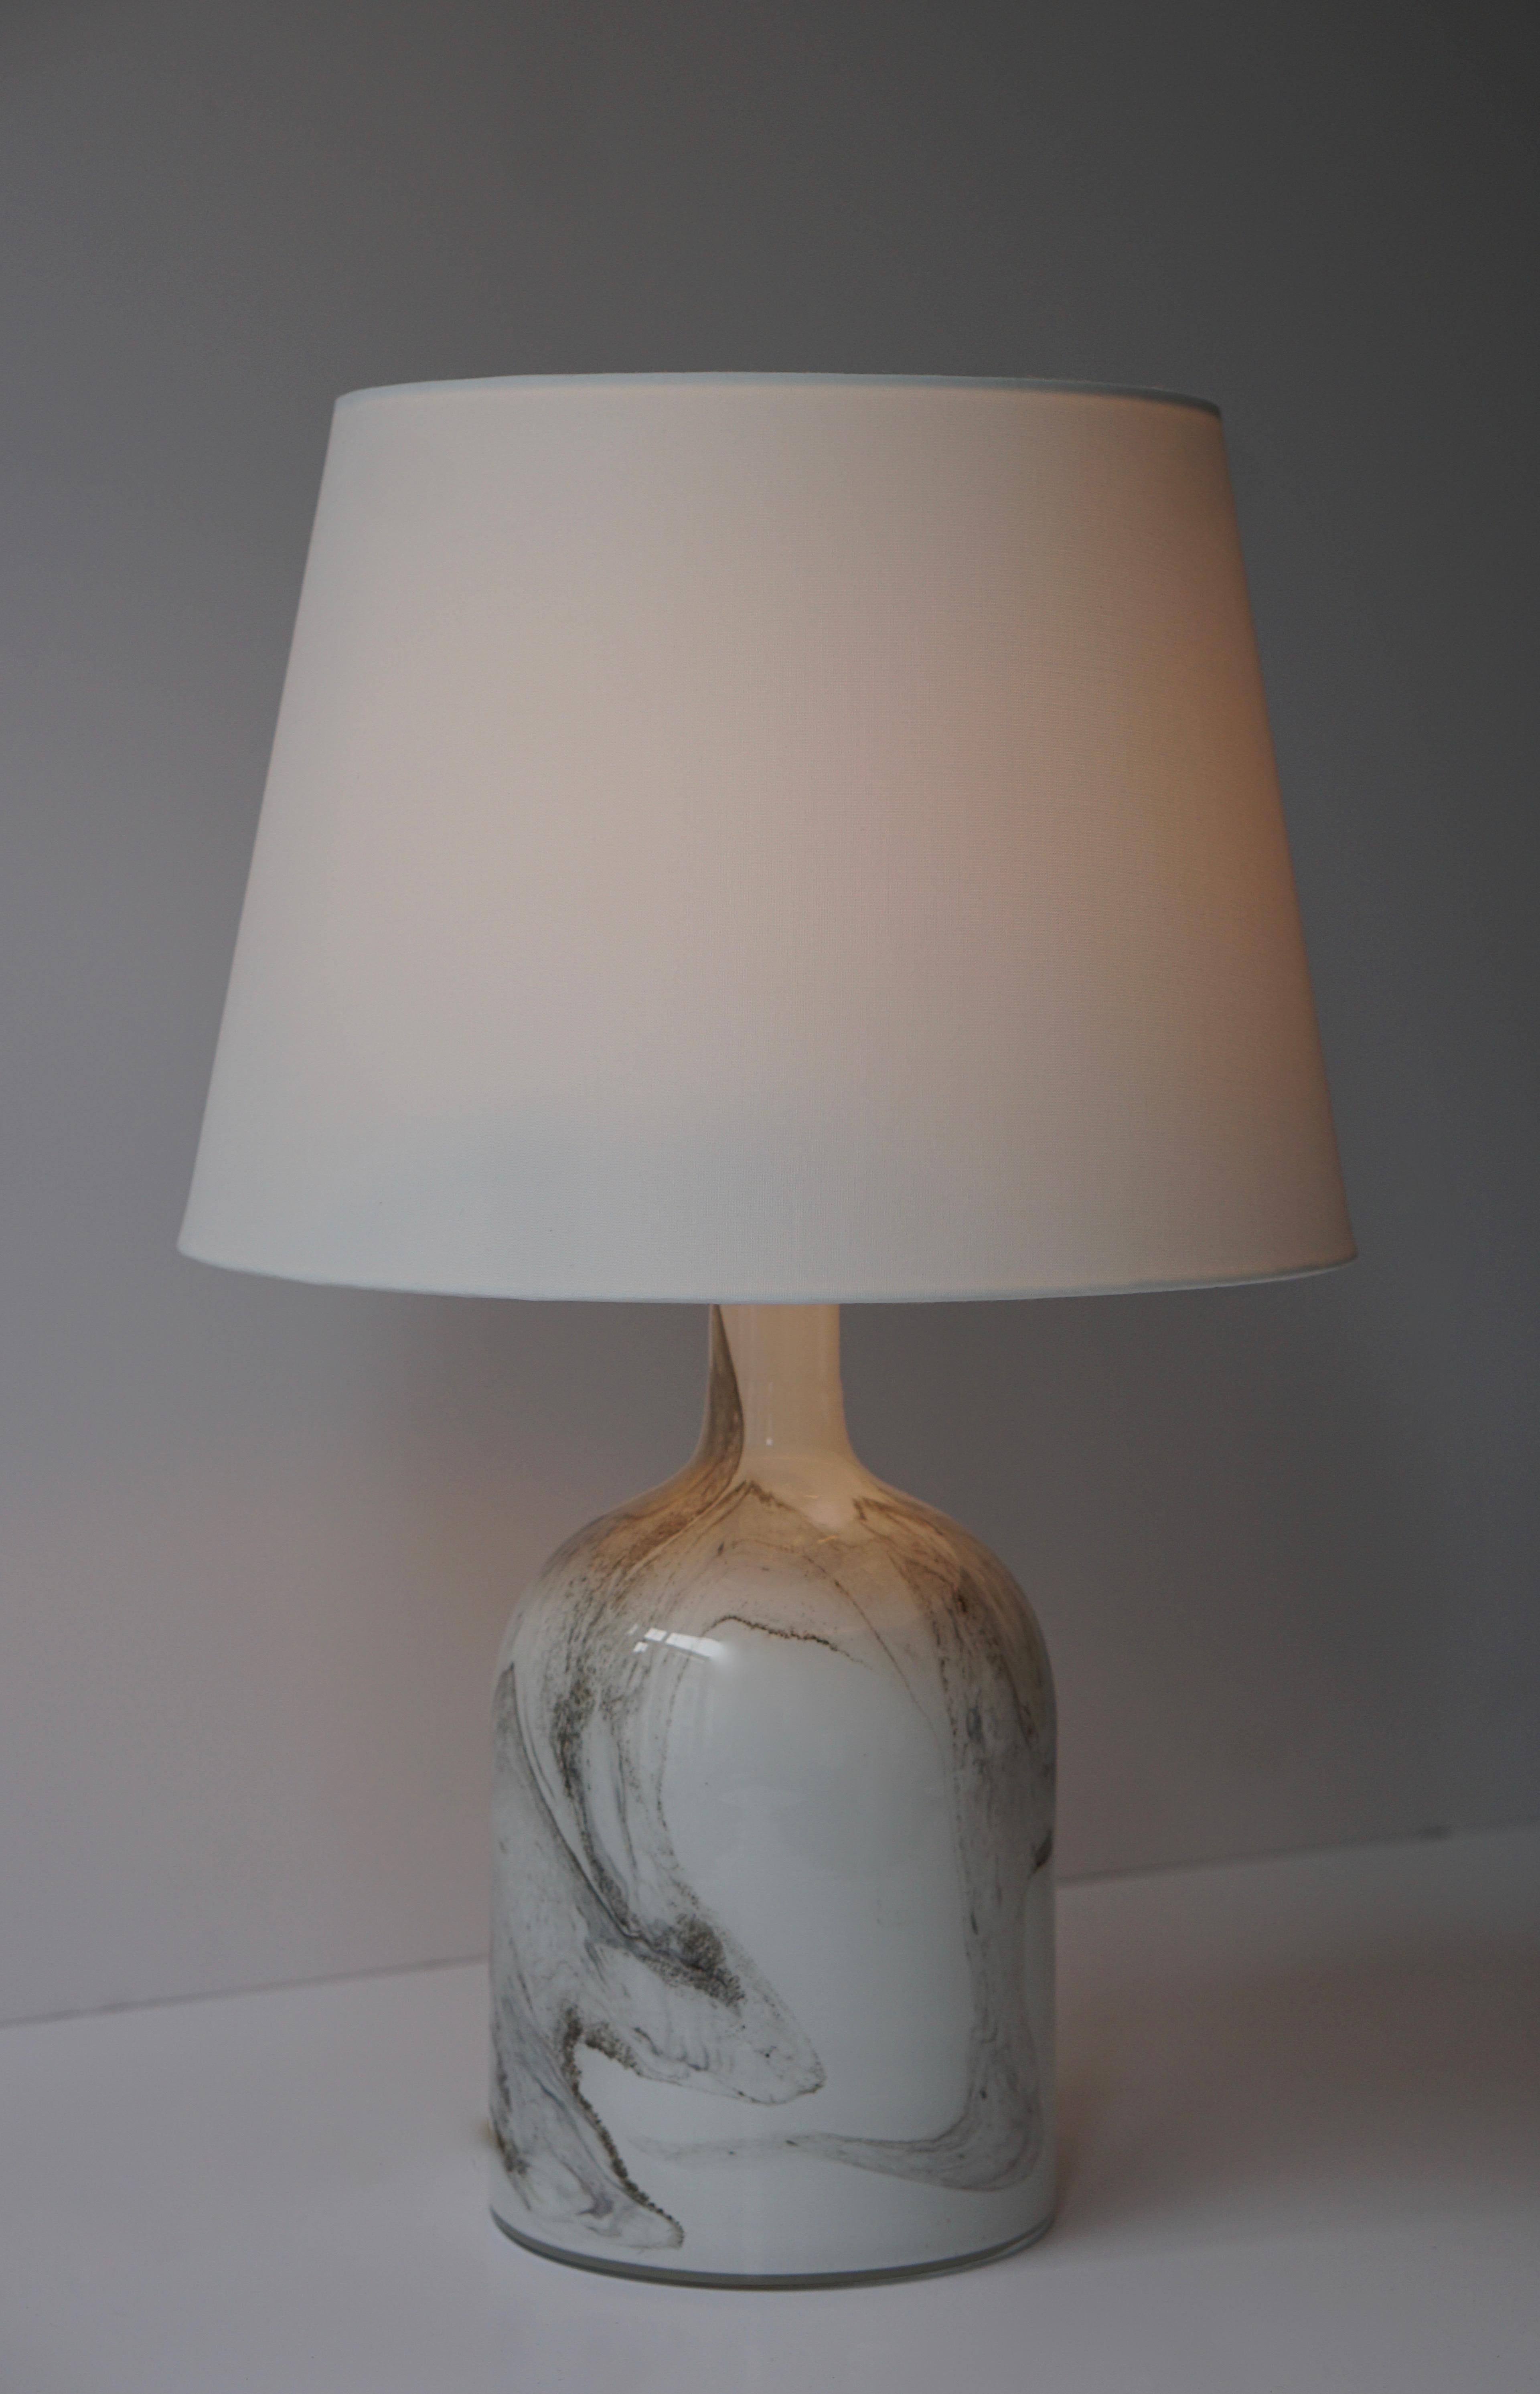 Große Holmegaard-Lampe mit Fassung aus gebürstetem Stahl von Holmegaard, Dänemark, 1984, in Weiß und Grau mit Glasschmelze unter dem glatten Klarglas, entworfen von Michael Bang 1984. Das Glas ist von dicker, schwerer Qualität und zeitlos schöner